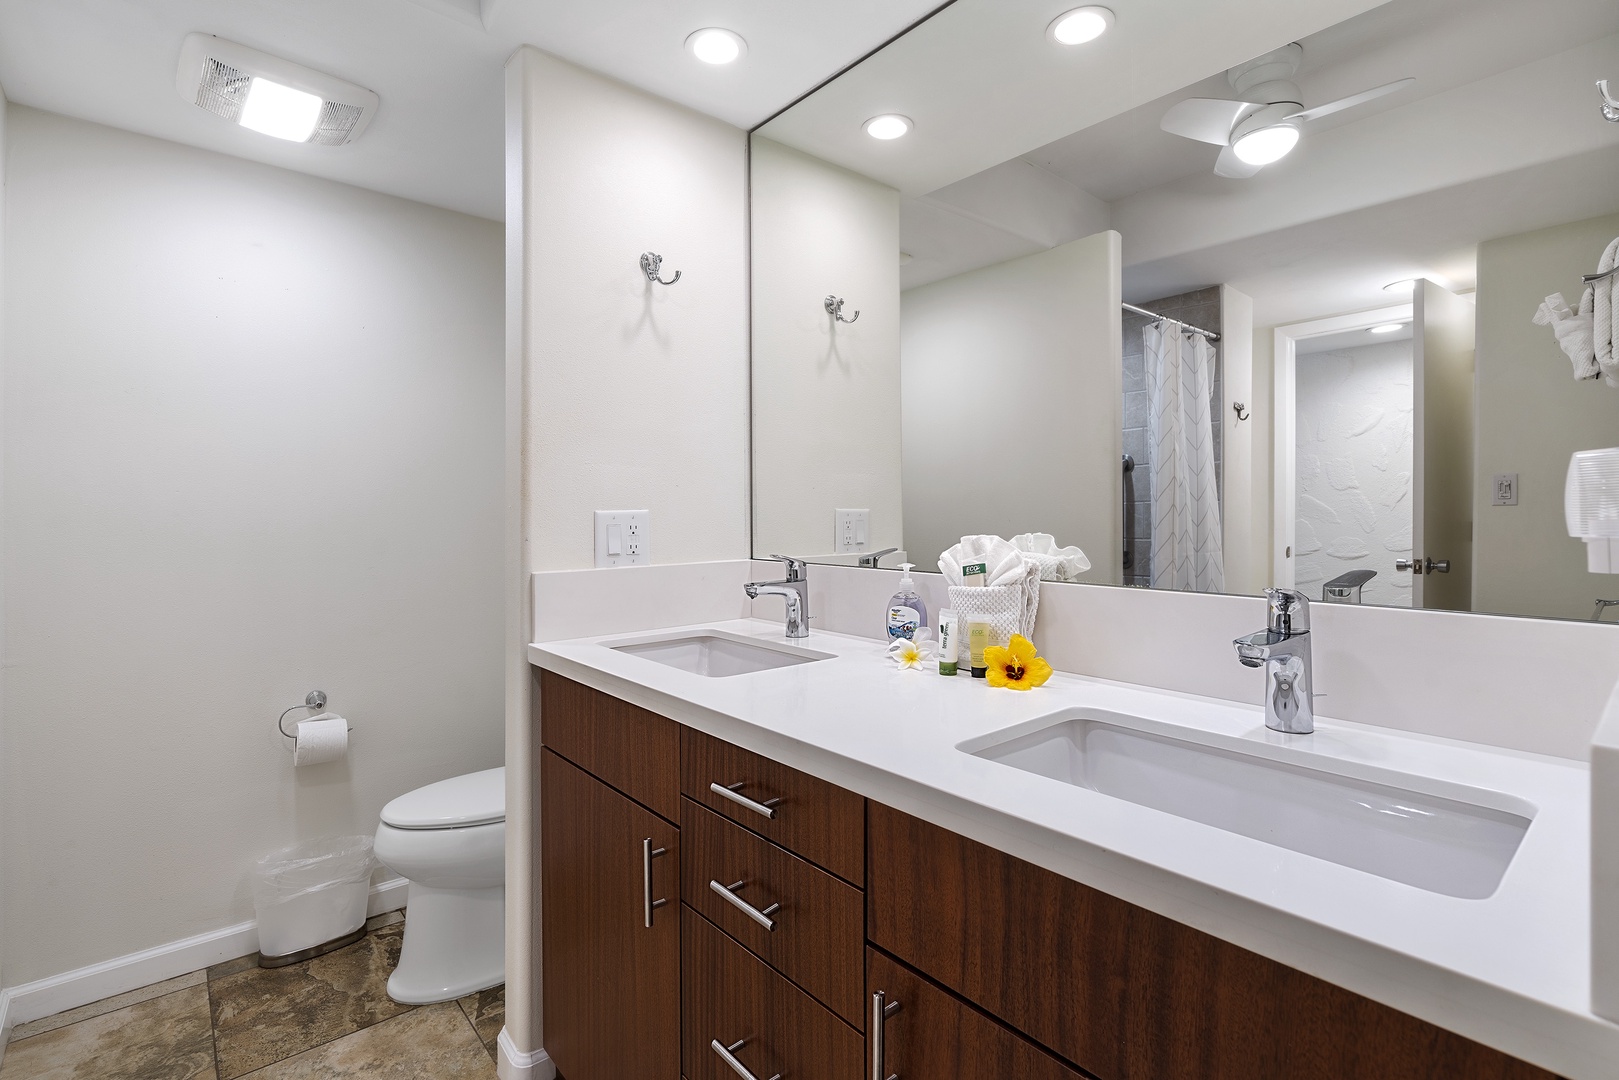 Kailua Kona Vacation Rentals, Casa De Emdeko 104 - Renovated bathroom with dual vanities!